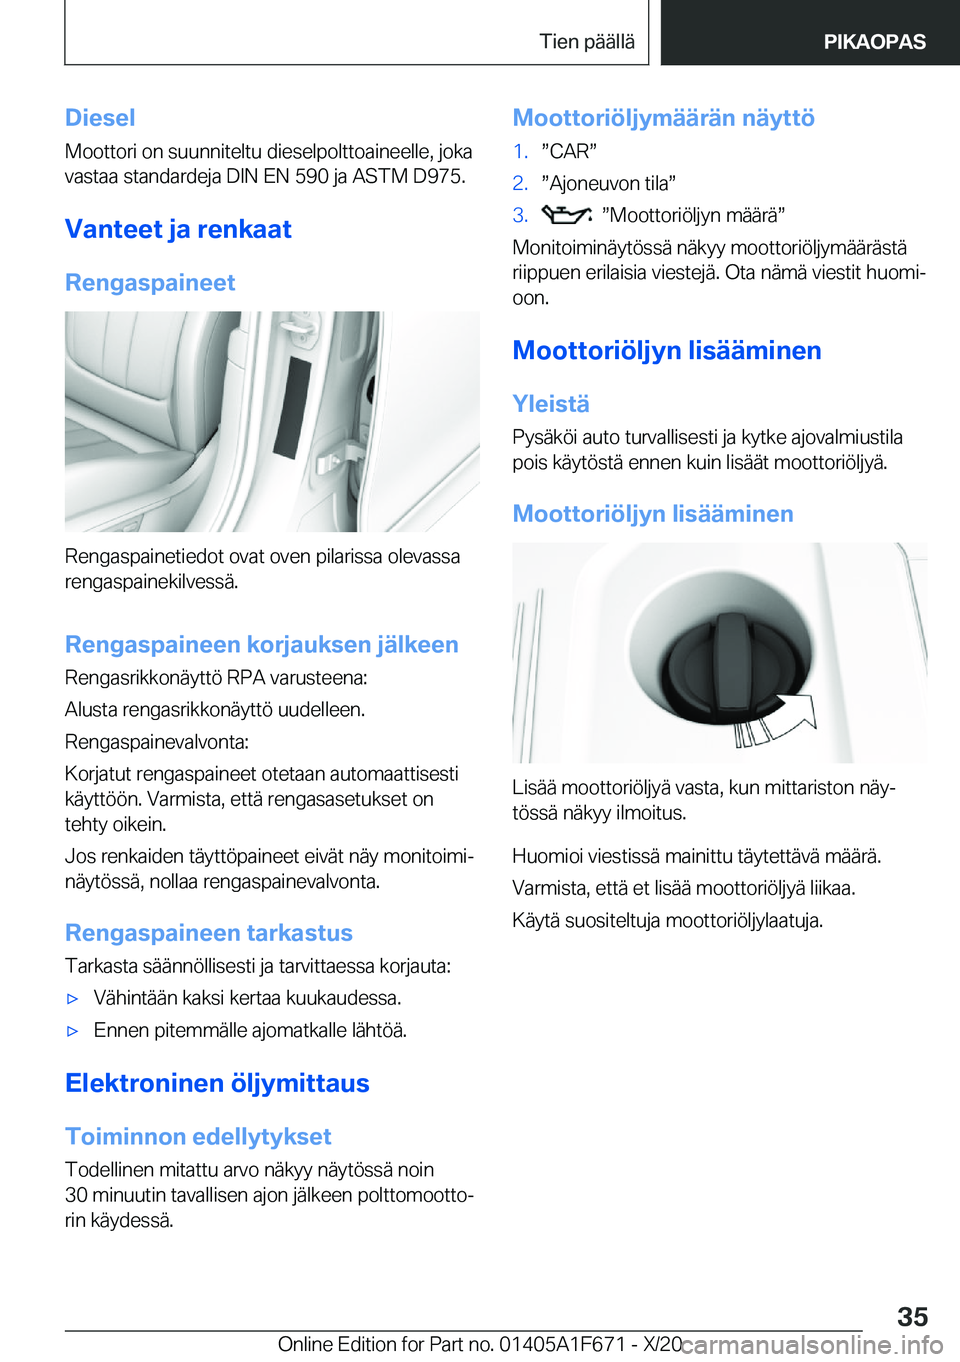 BMW X4 2021  Omistajan Käsikirja (in Finnish) �D�i�e�s�e�l
�M�o�o�t�t�o�r�i��o�n��s�u�u�n�n�i�t�e�l�t�u��d�i�e�s�e�l�p�o�l�t�t�o�a�i�n�e�e�l�l�e�,��j�o�k�a
�v�a�s�t�a�a��s�t�a�n�d�a�r�d�e�j�a��D�I�N��E�N��5�9�0��j�a��A�S�T�M��D�9�7�5�.